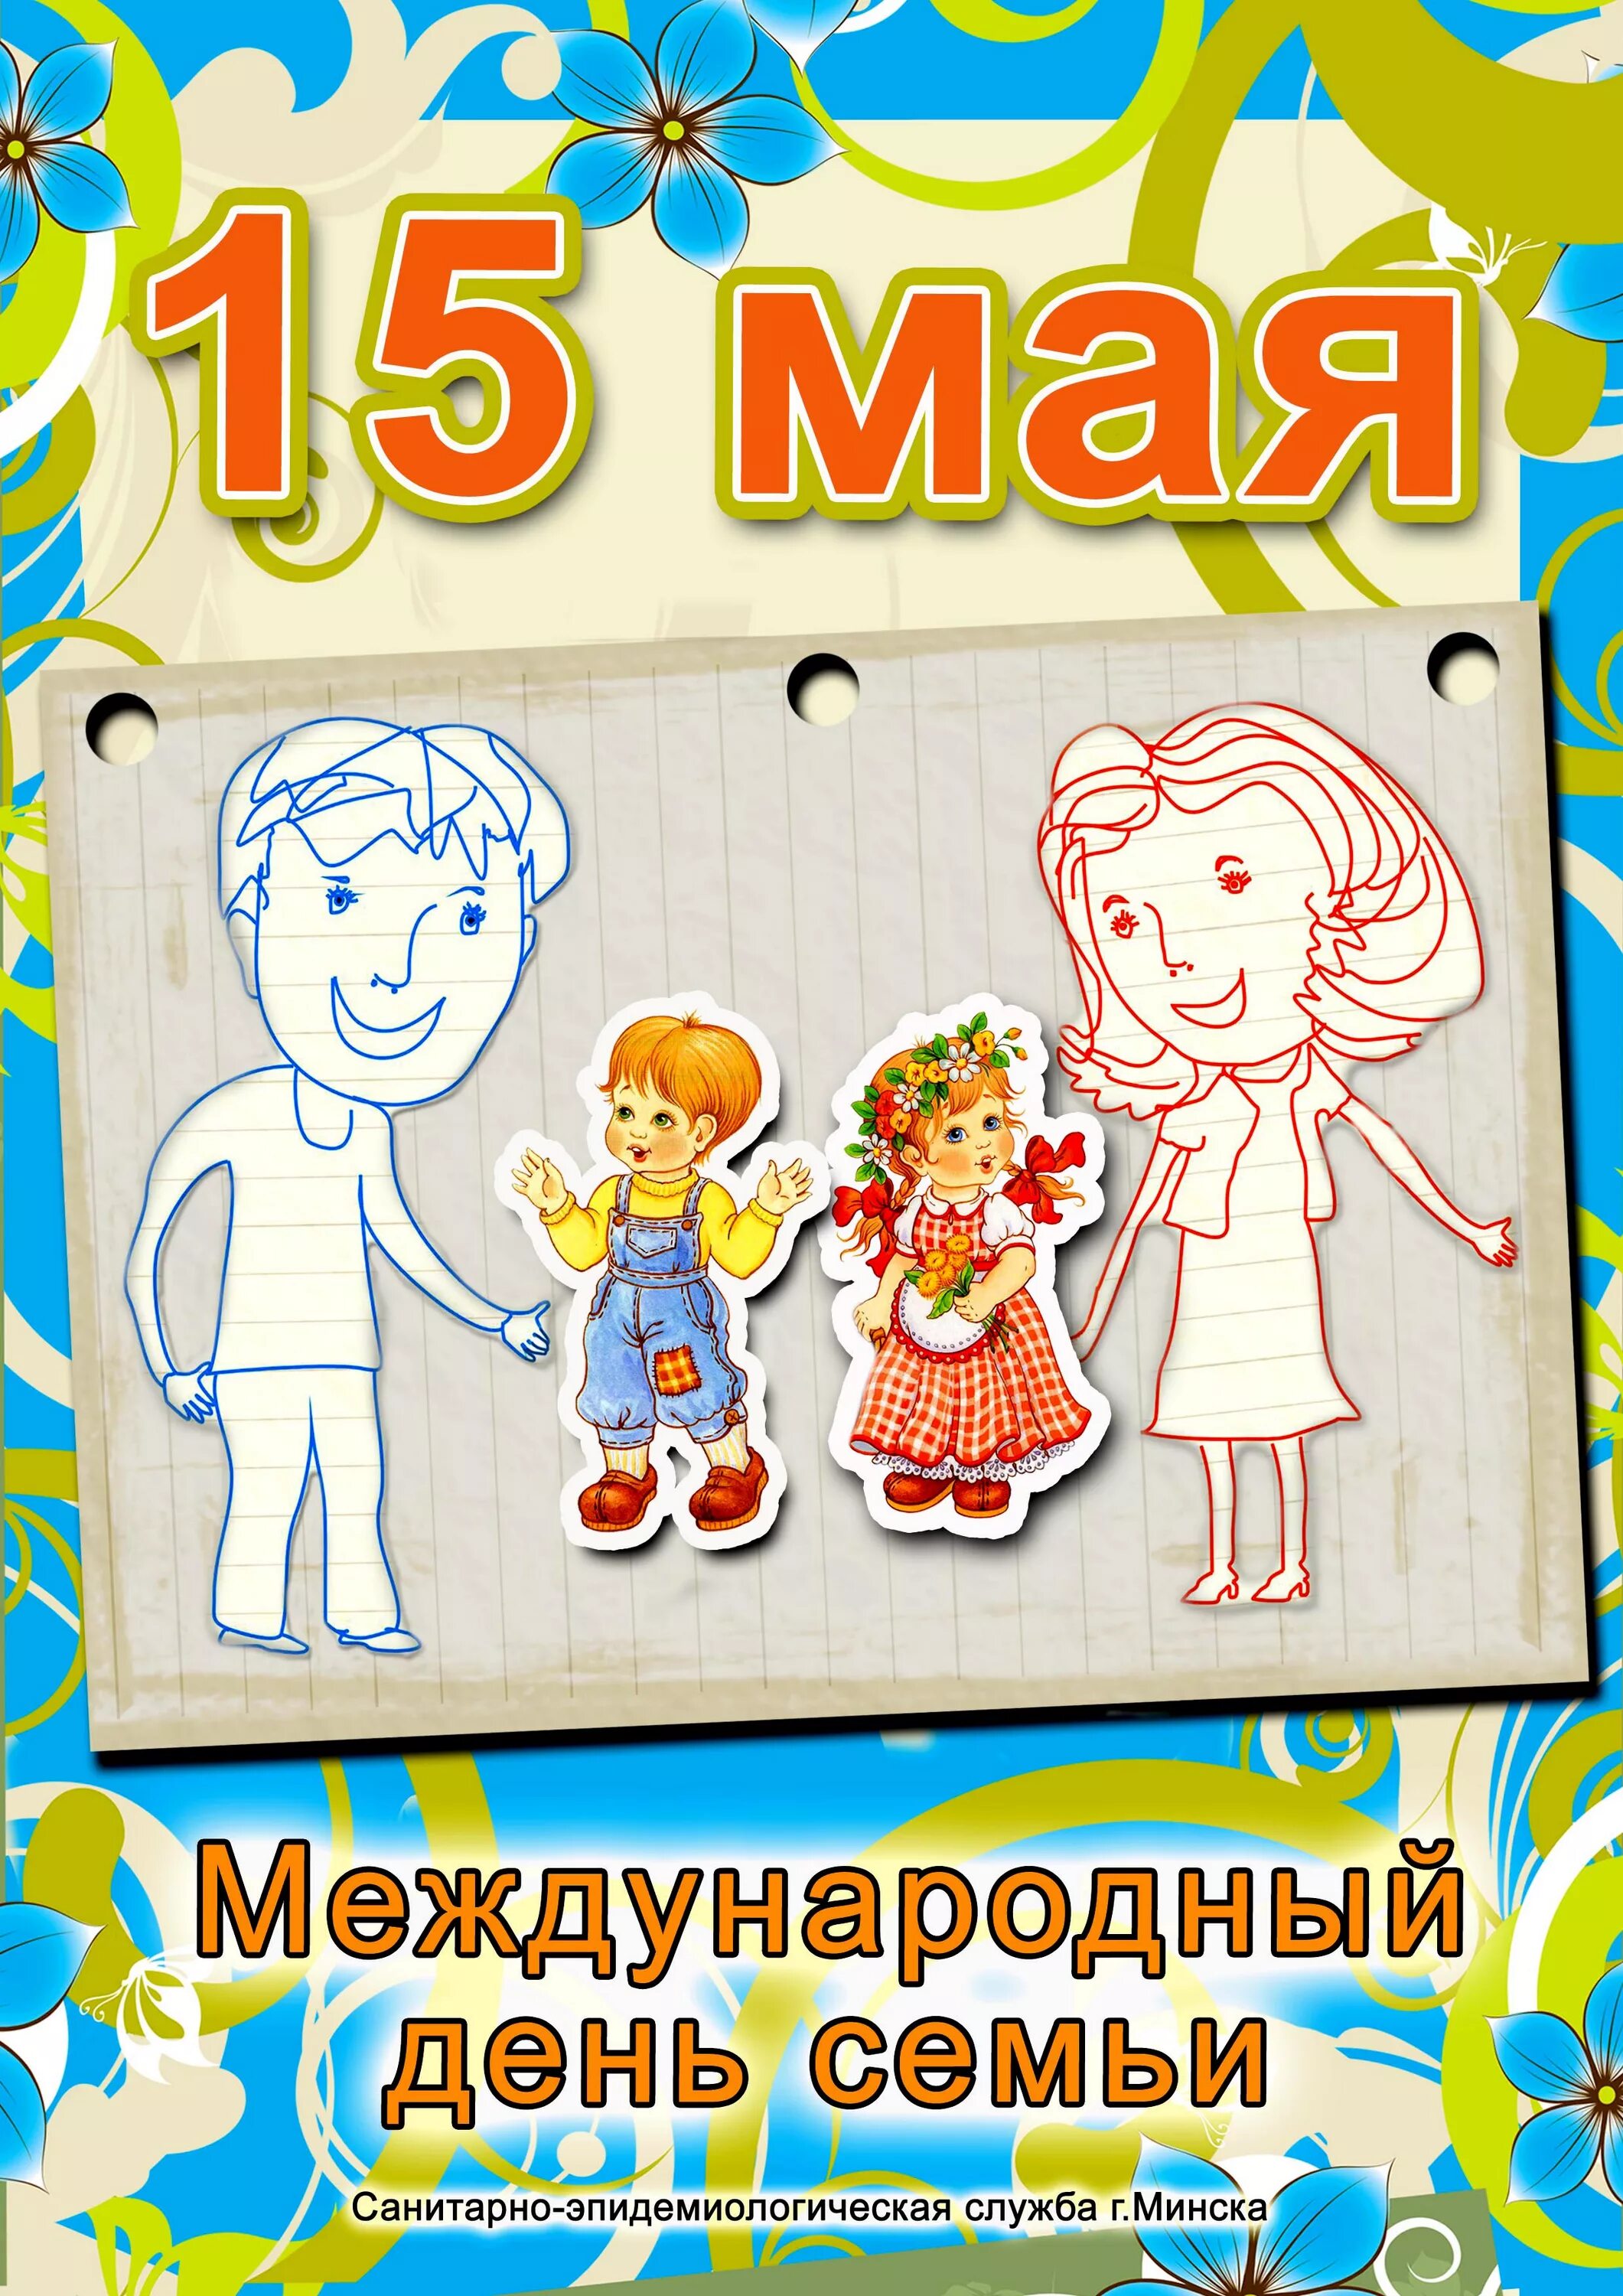 День семьи 15 мая для детей. Международный день семьи. День семьи 15 мая. Международный деньснмьи. Международныйдееь семьи.